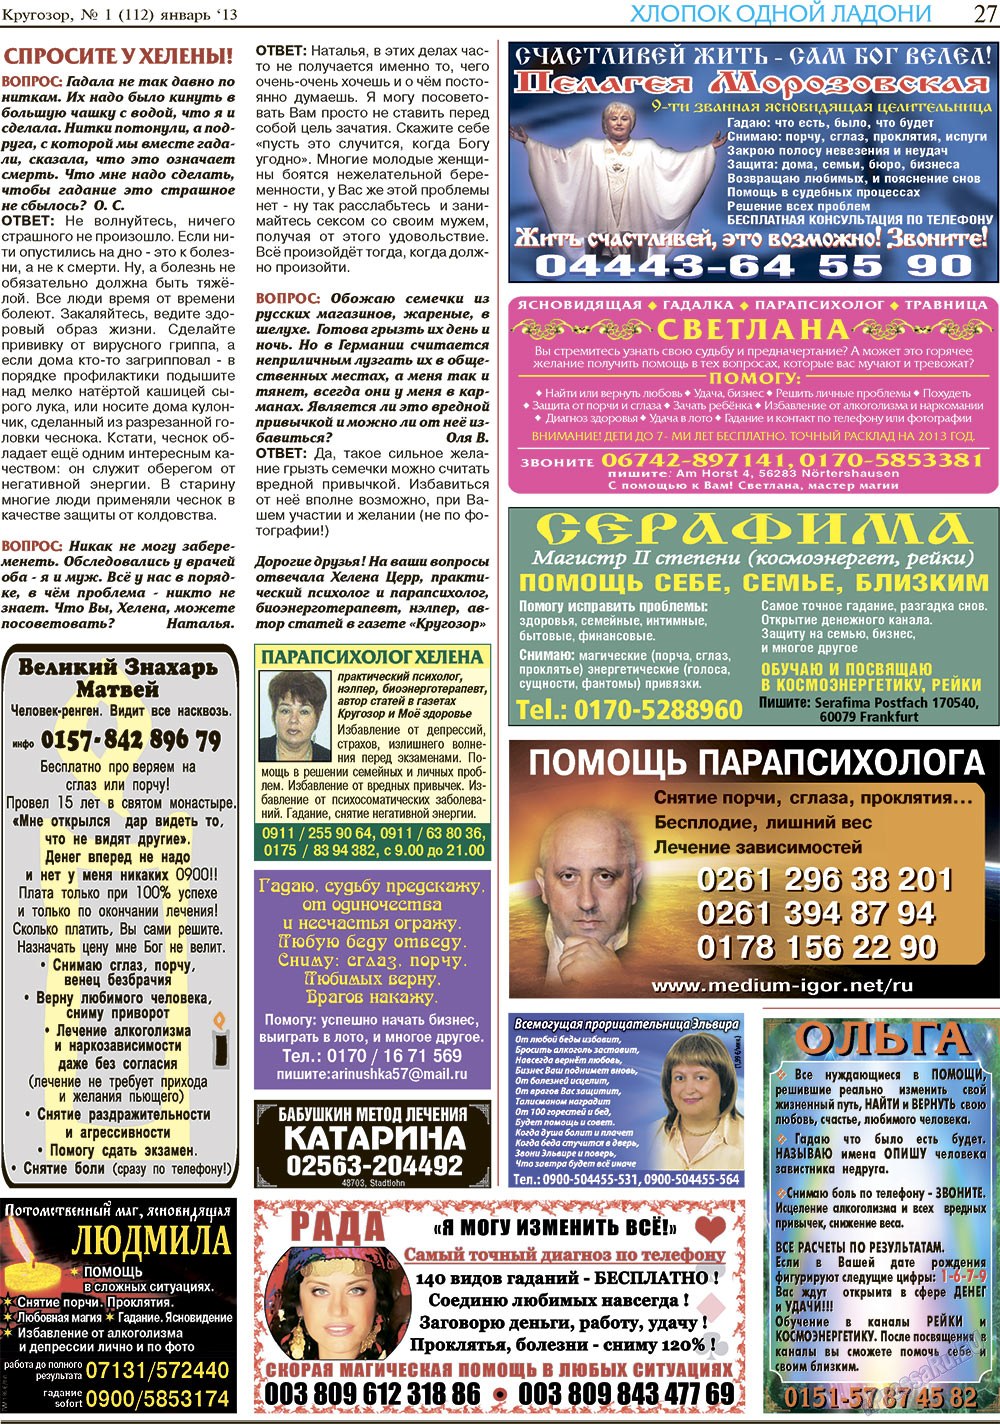 Кругозор, газета. 2013 №1 стр.27